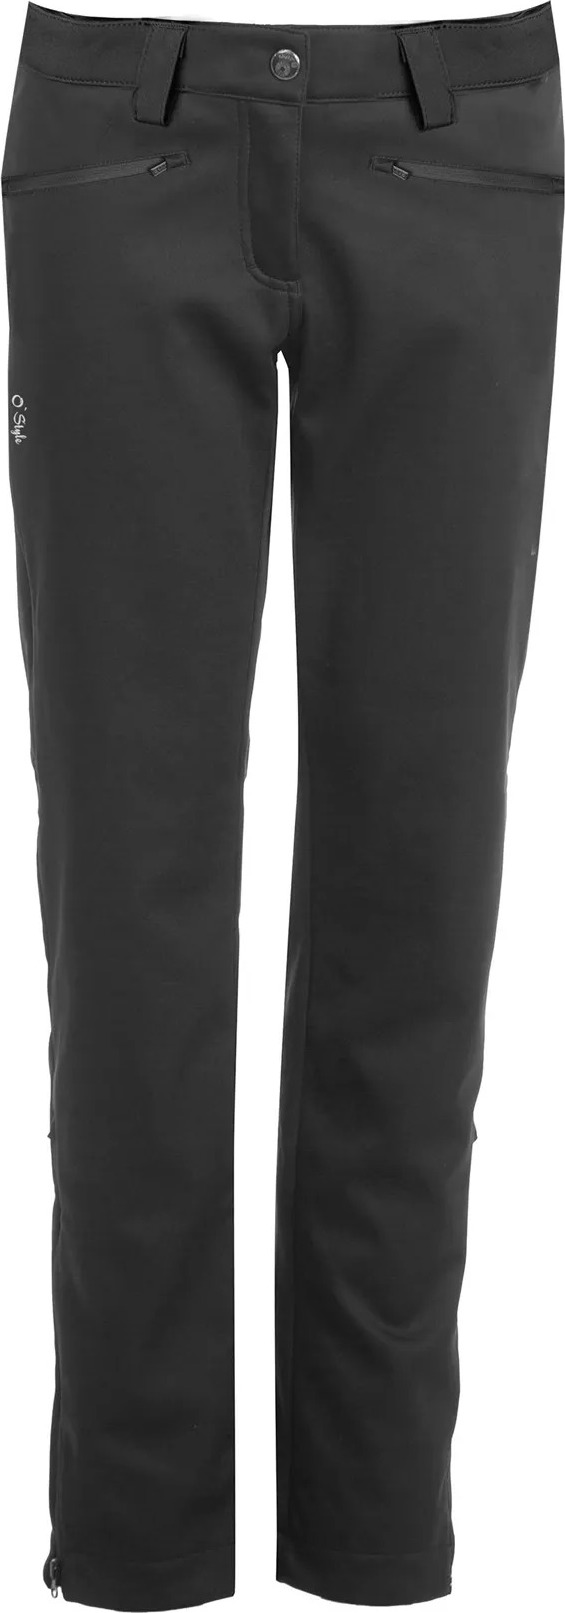 Dámské softshellové kalhoty O'STYLE Riva II černé Velikost: 34